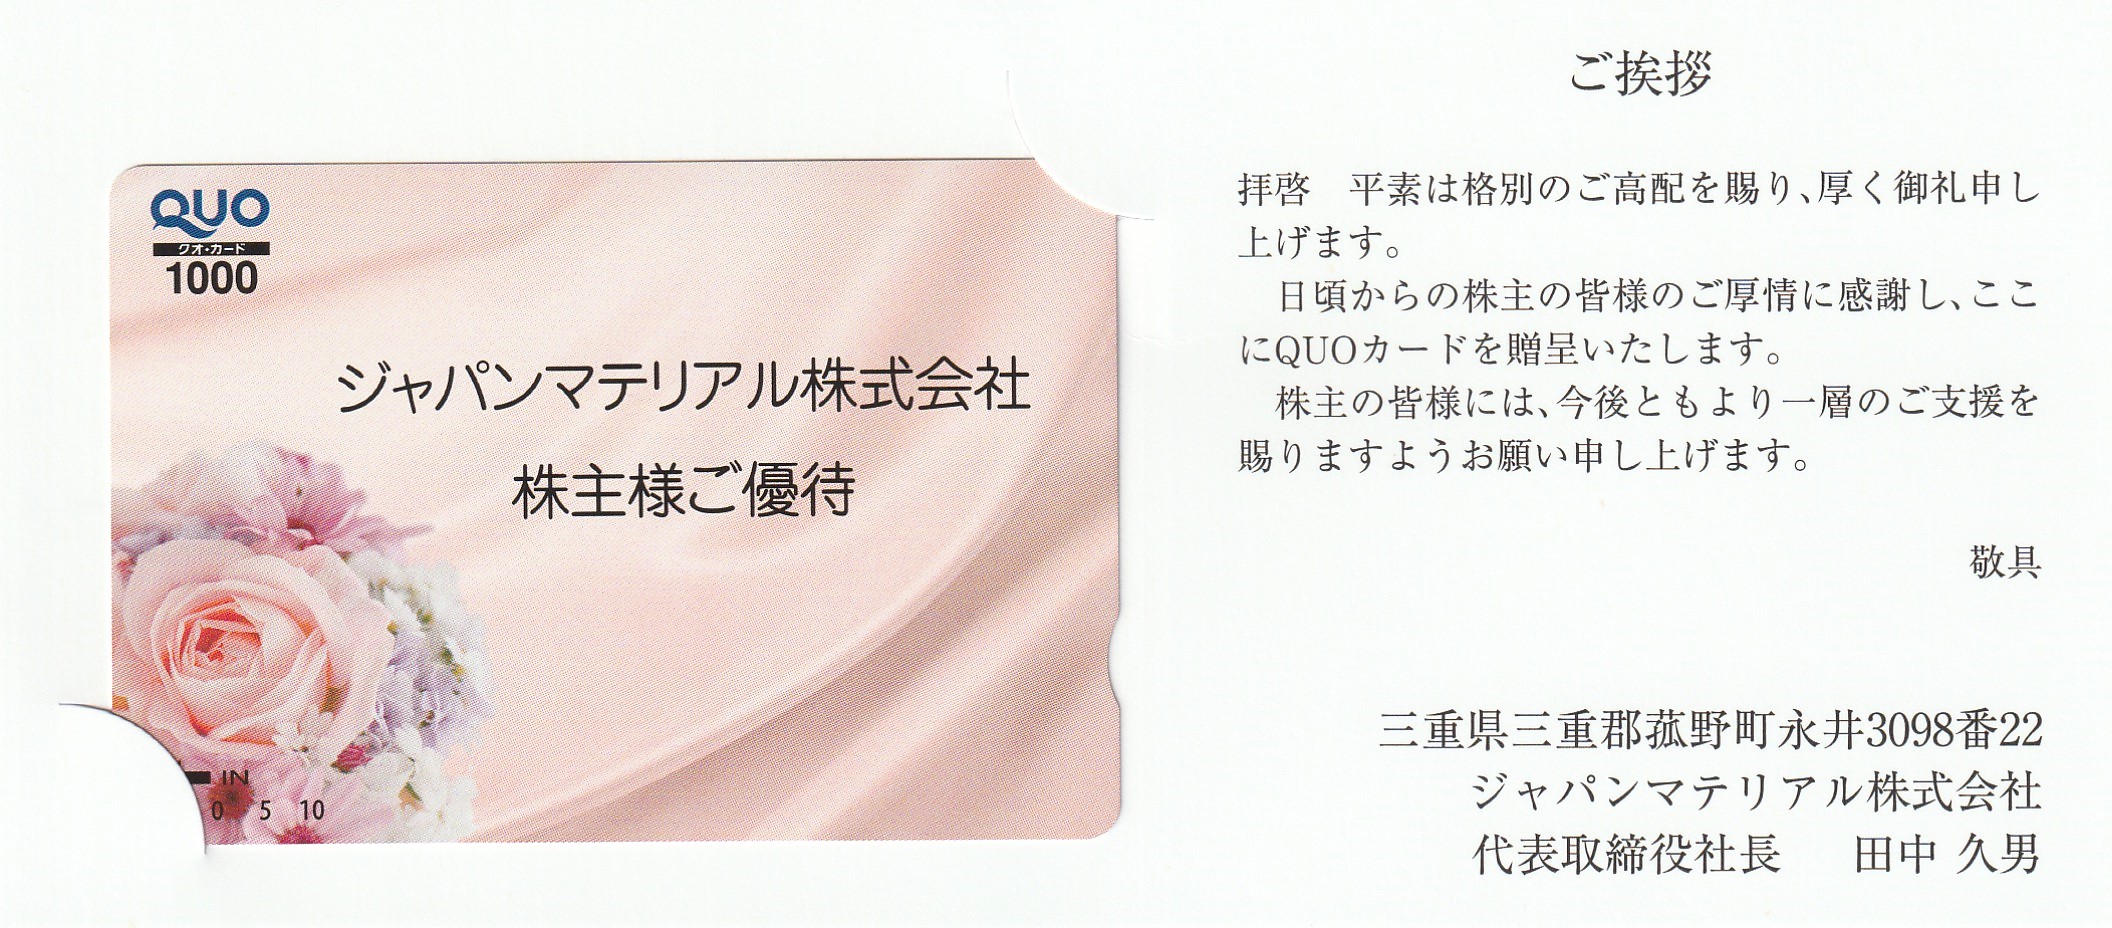 【9月優待】ジャパンマテリアル株式会社からQUOカードが届きました